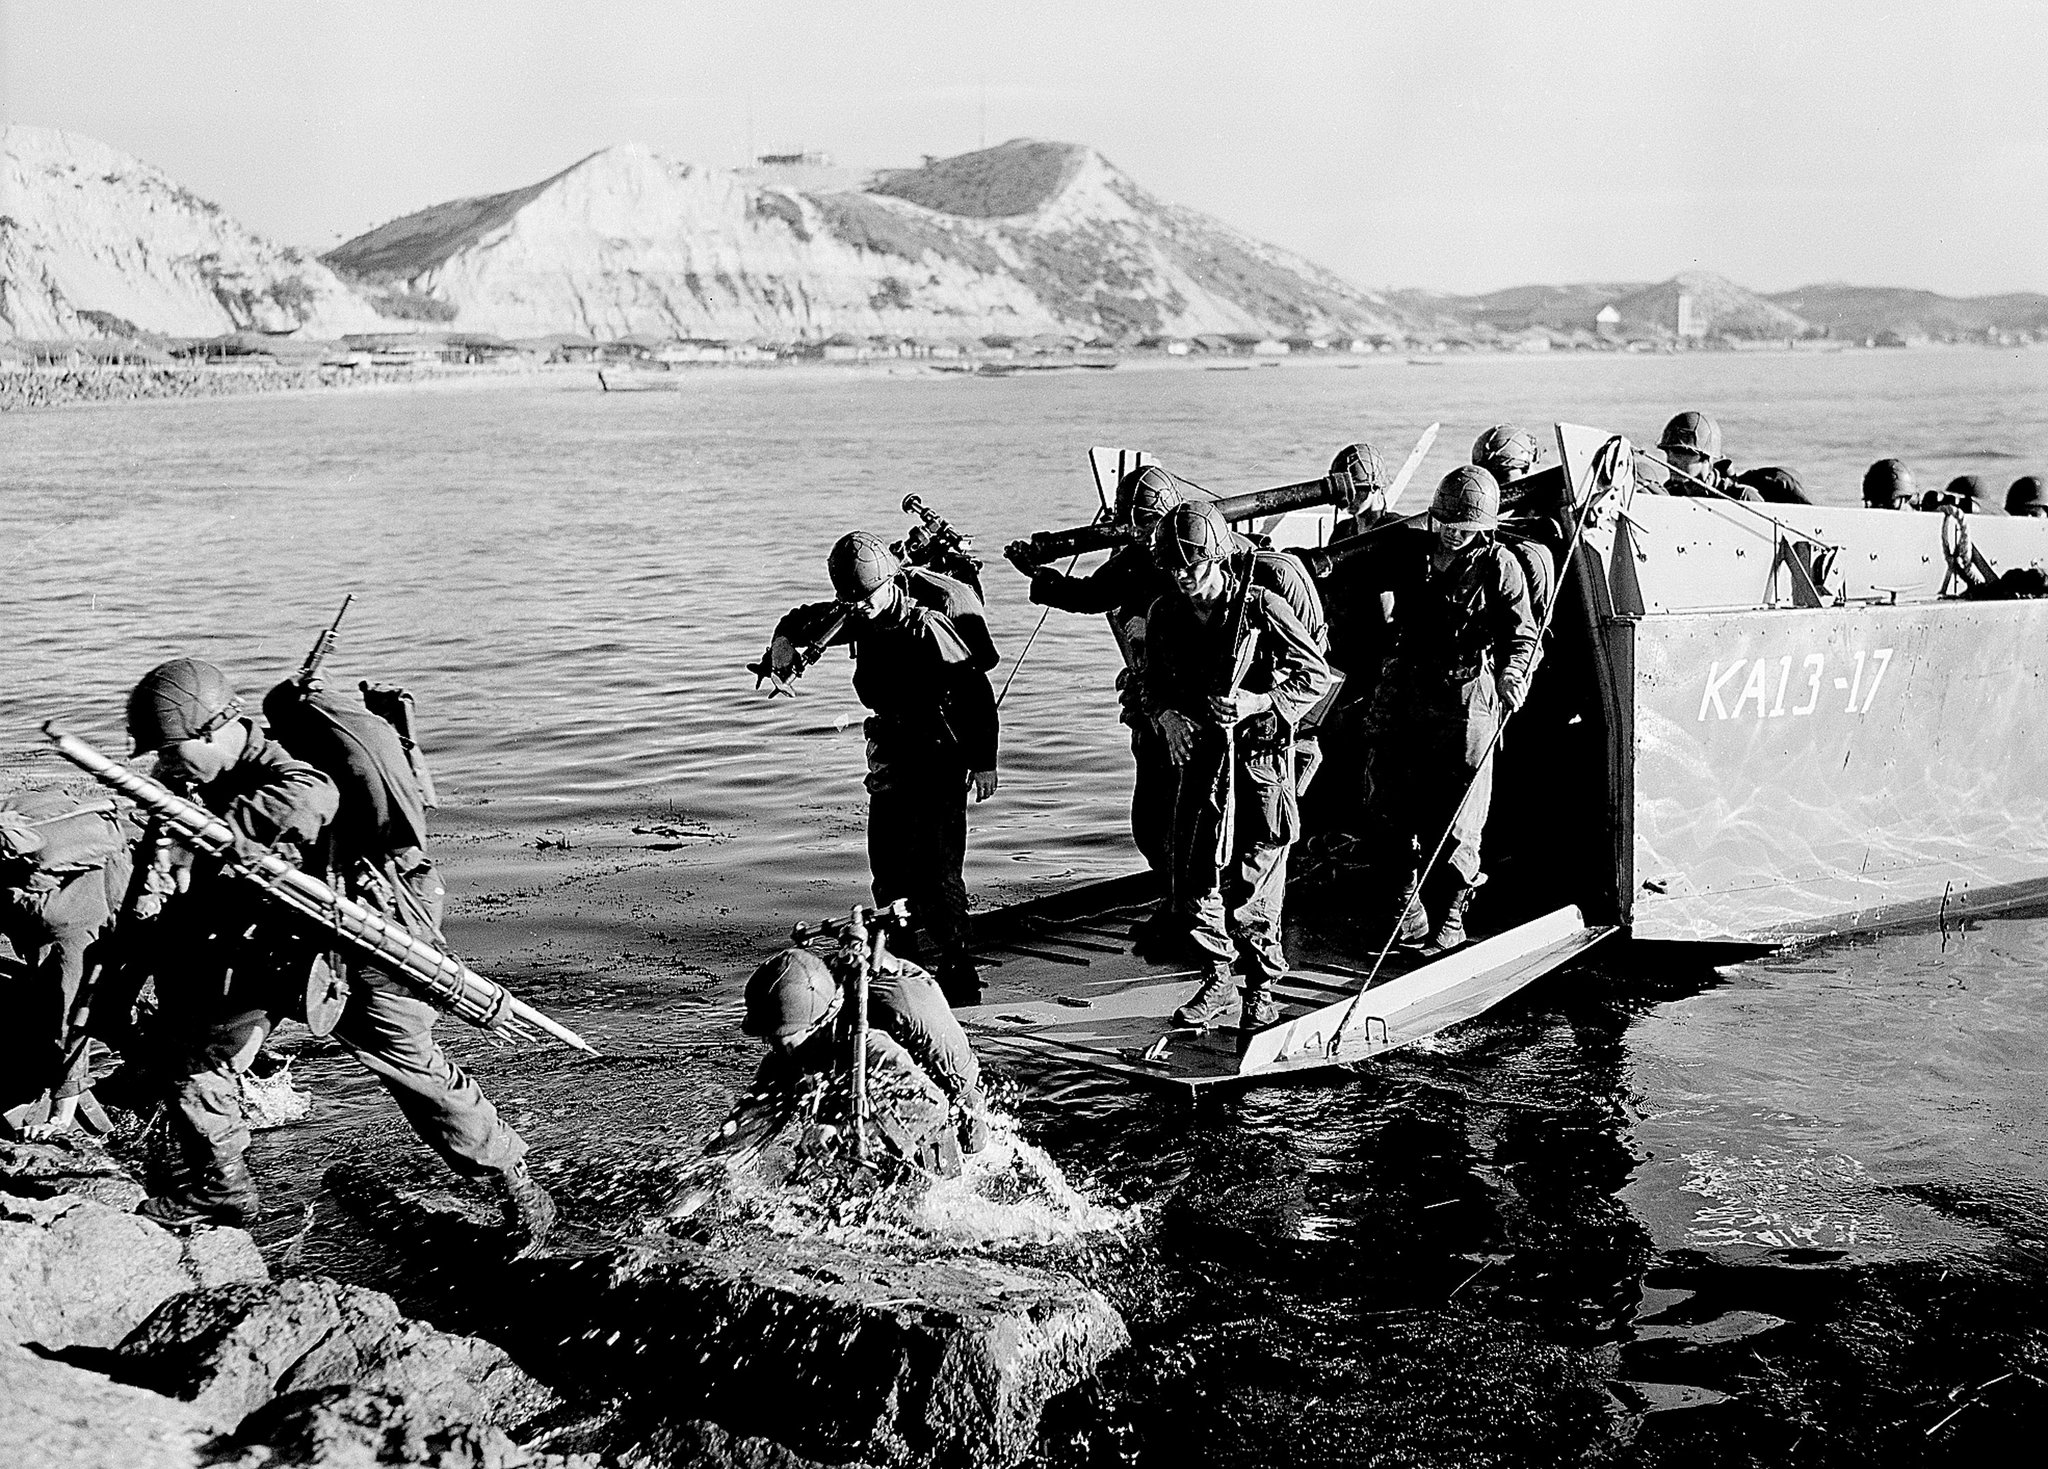 Guerra da Coreia | Seul “repatriou” restos de 20 soldados chineses mortos